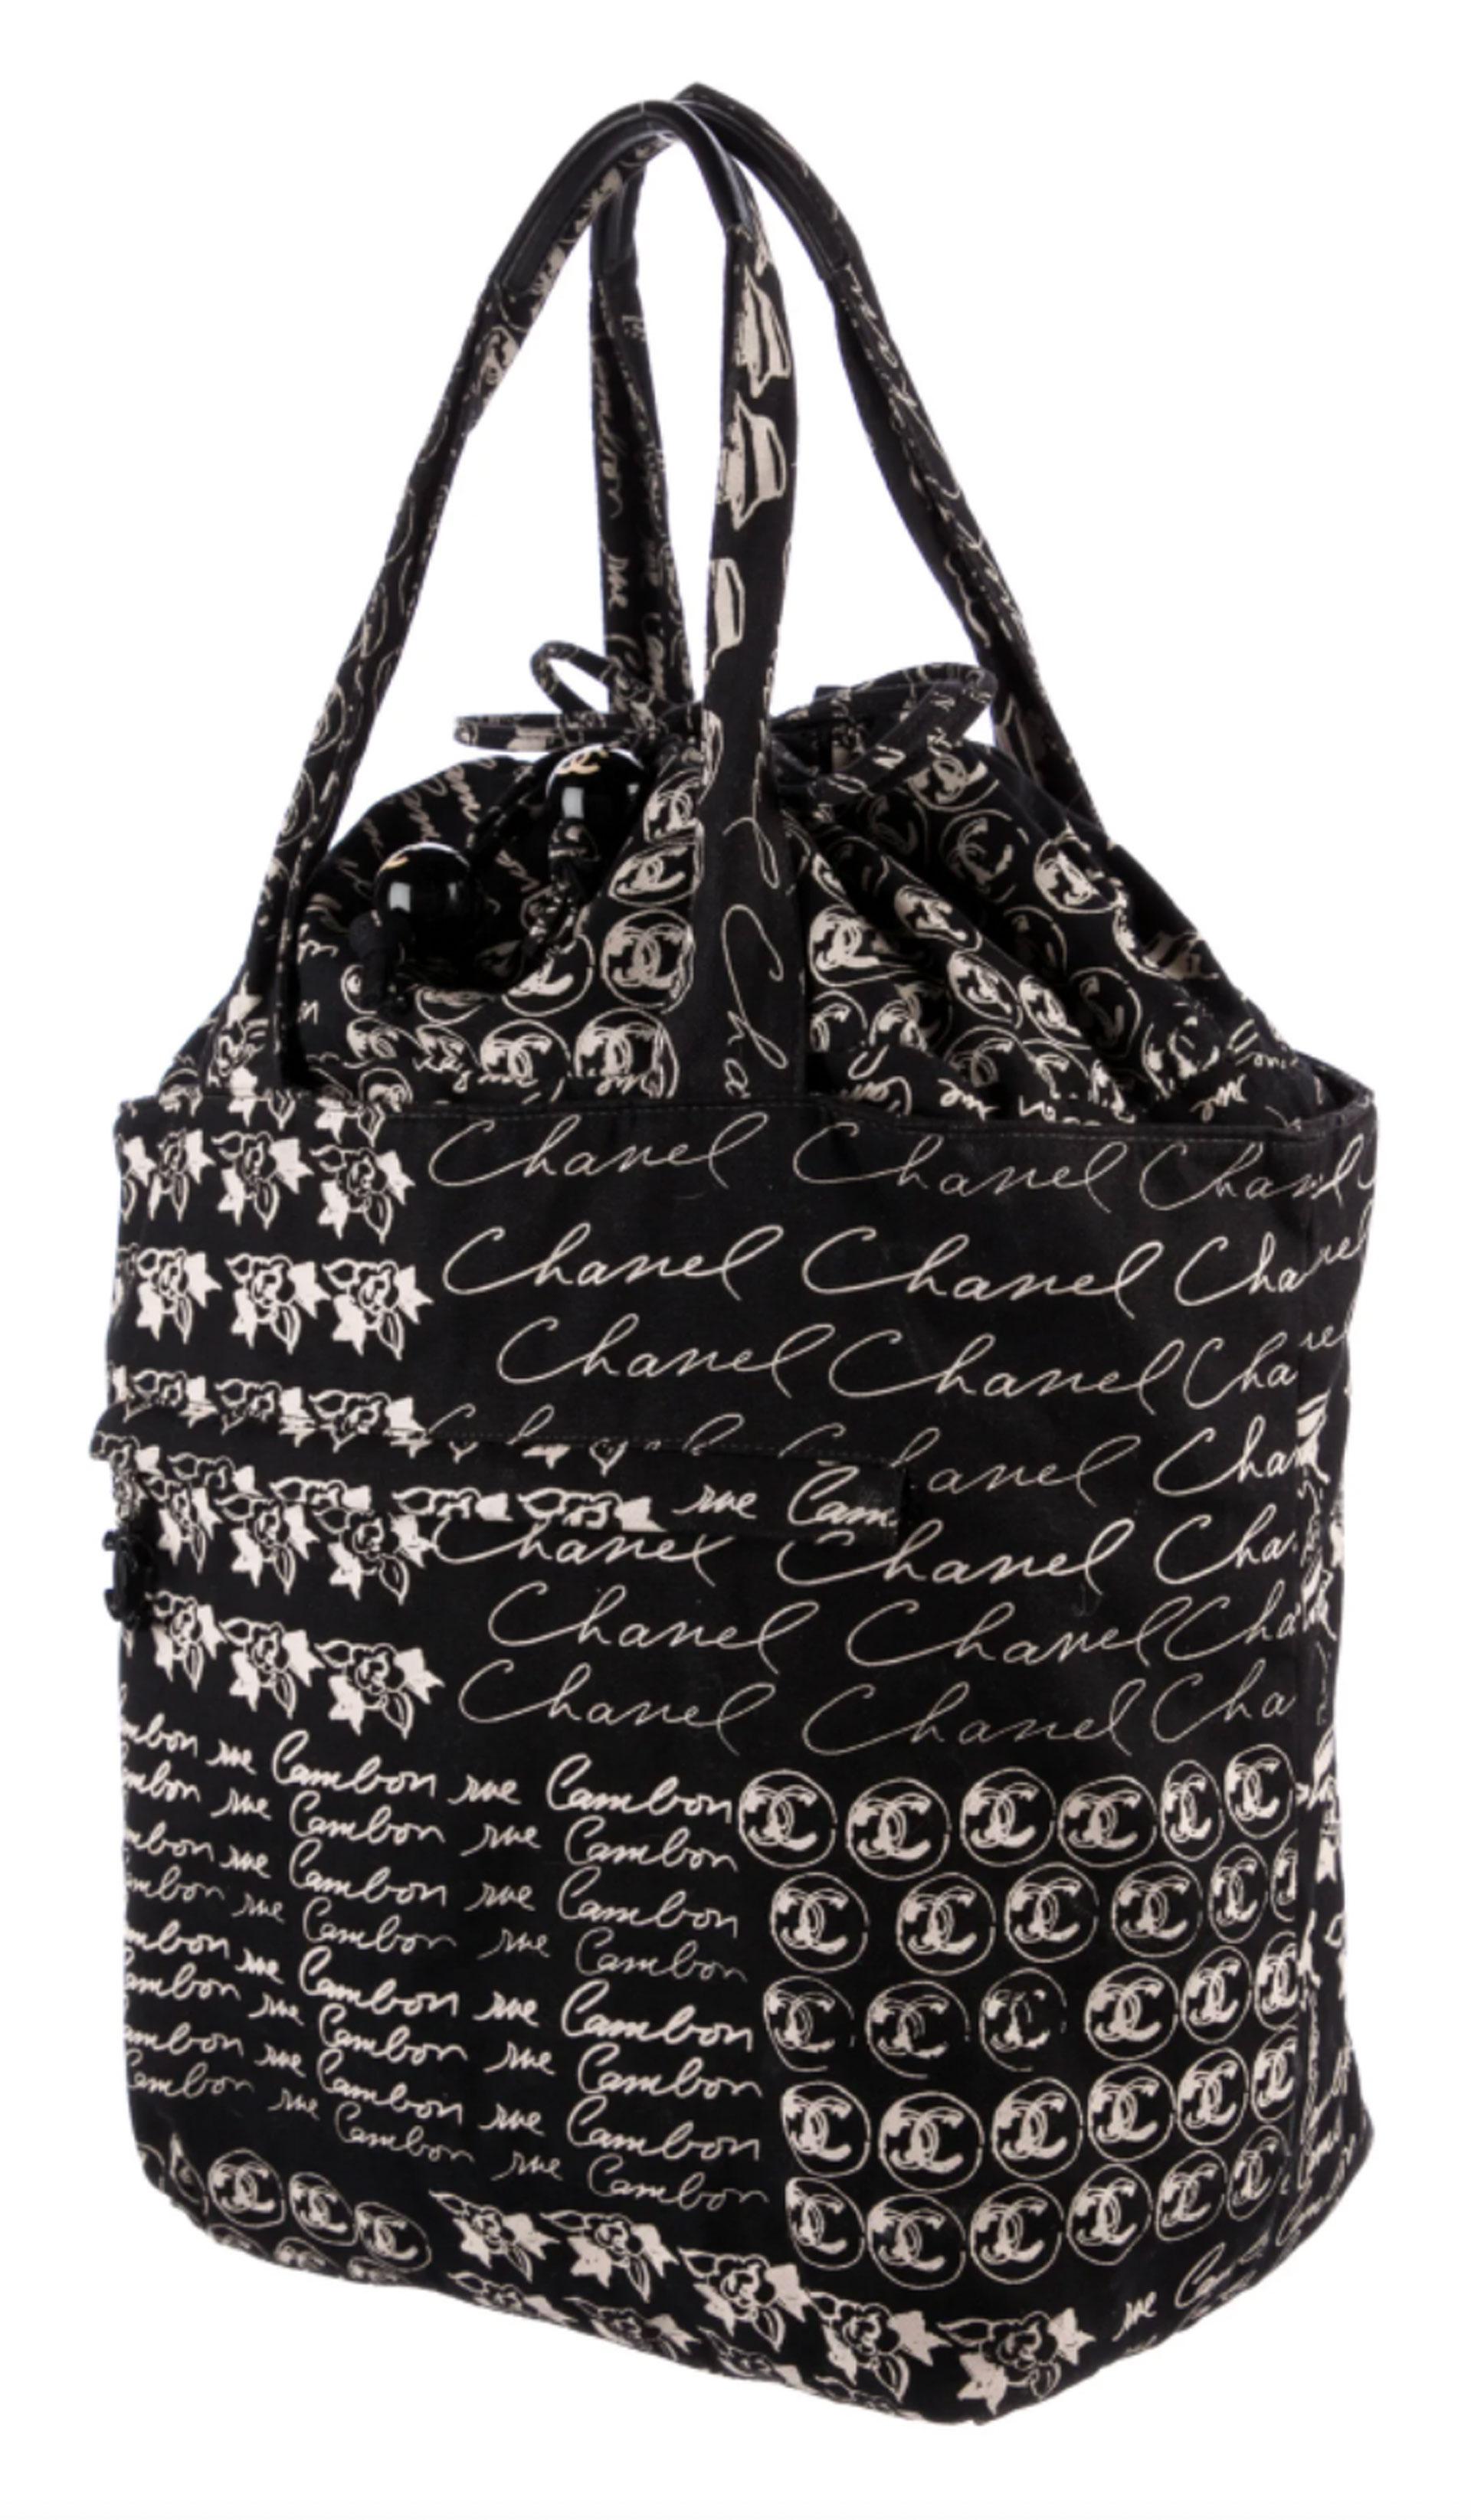 Chanel Vintage Black CC Logo Large Drawstring Tote

Fermeture à cordon
Orné d'une grande breloque CC et d'une boule ronde du logo CC à l'extrémité du cordon

Fabriqué en France 
